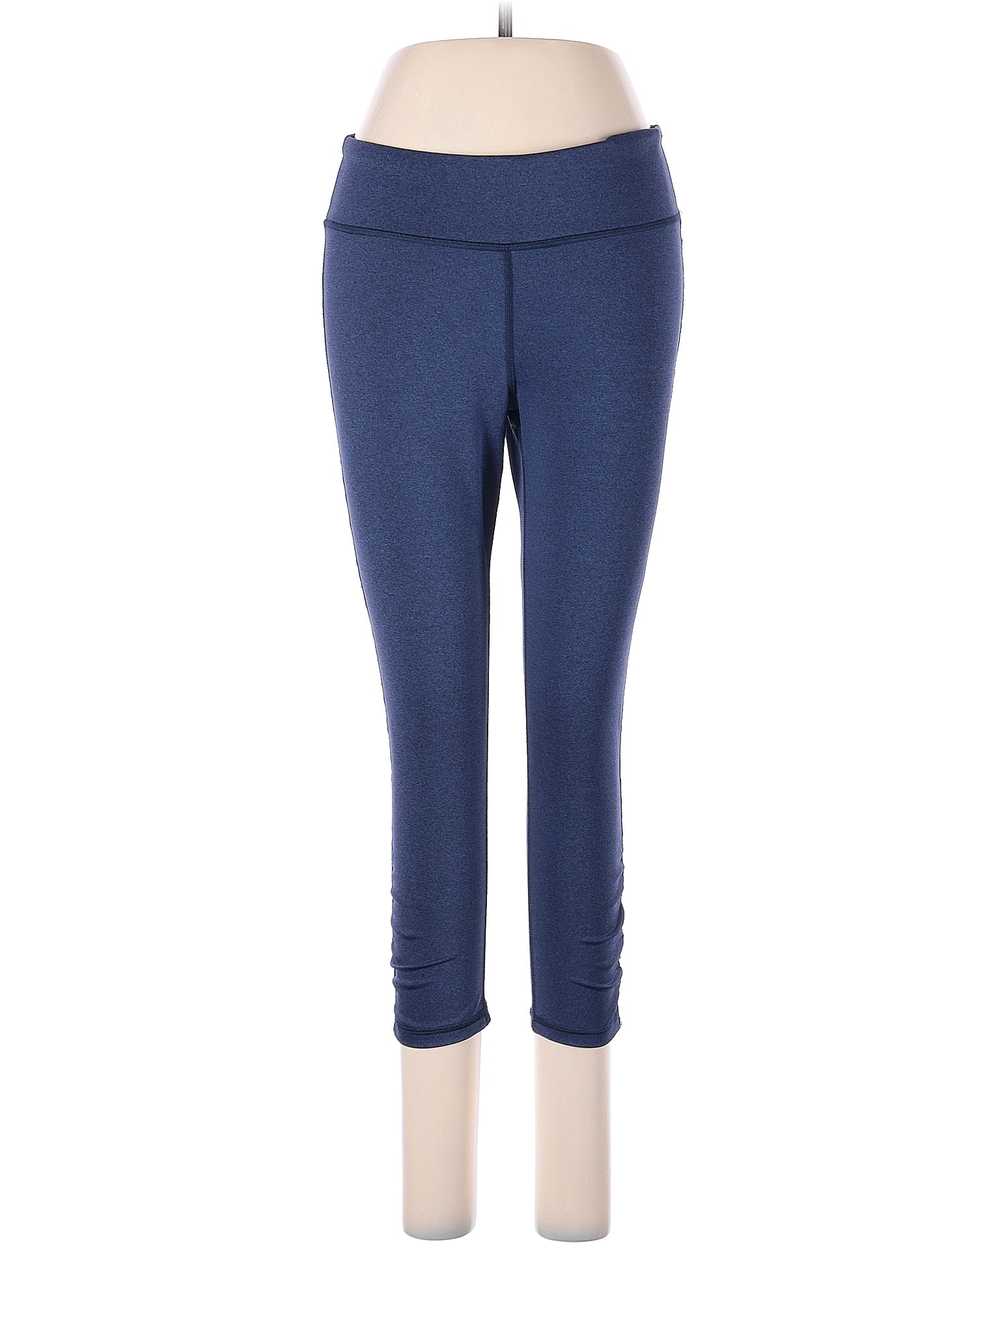 GAIAM Women Blue Active Pants M - image 1